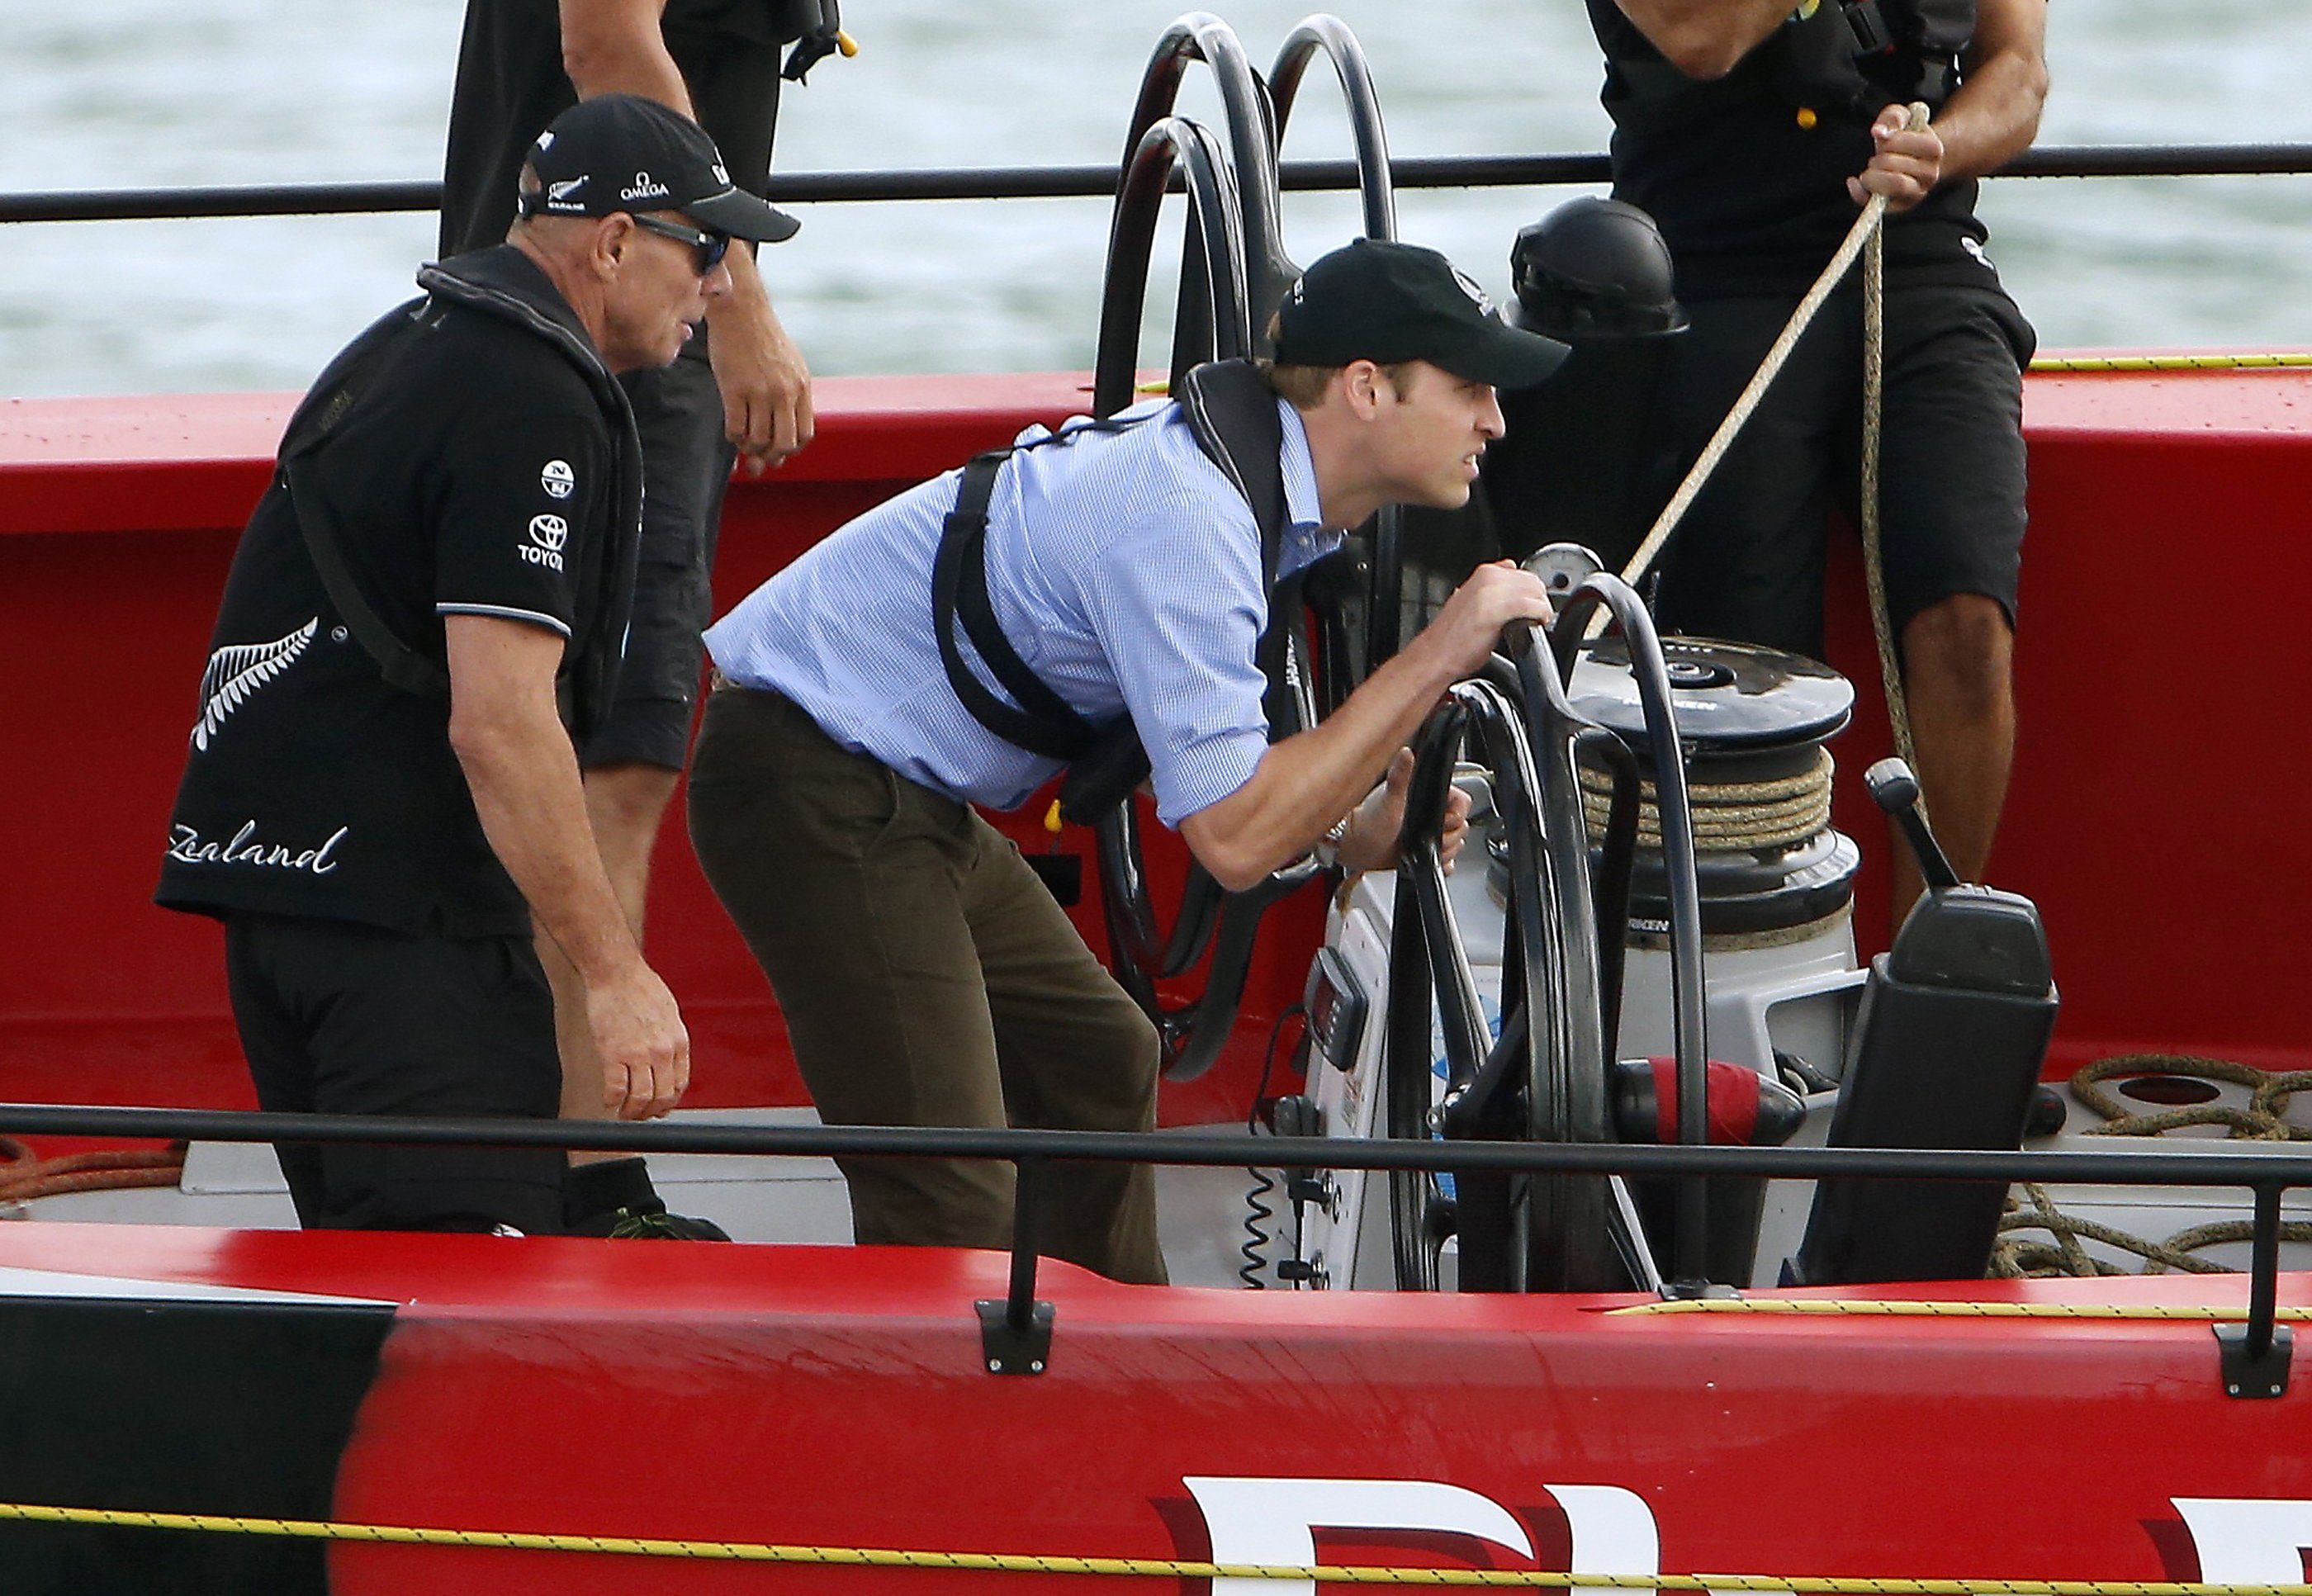 Принц Уильям и Кейт Миддлтон поучаствовали в яхтенных соревнованиях